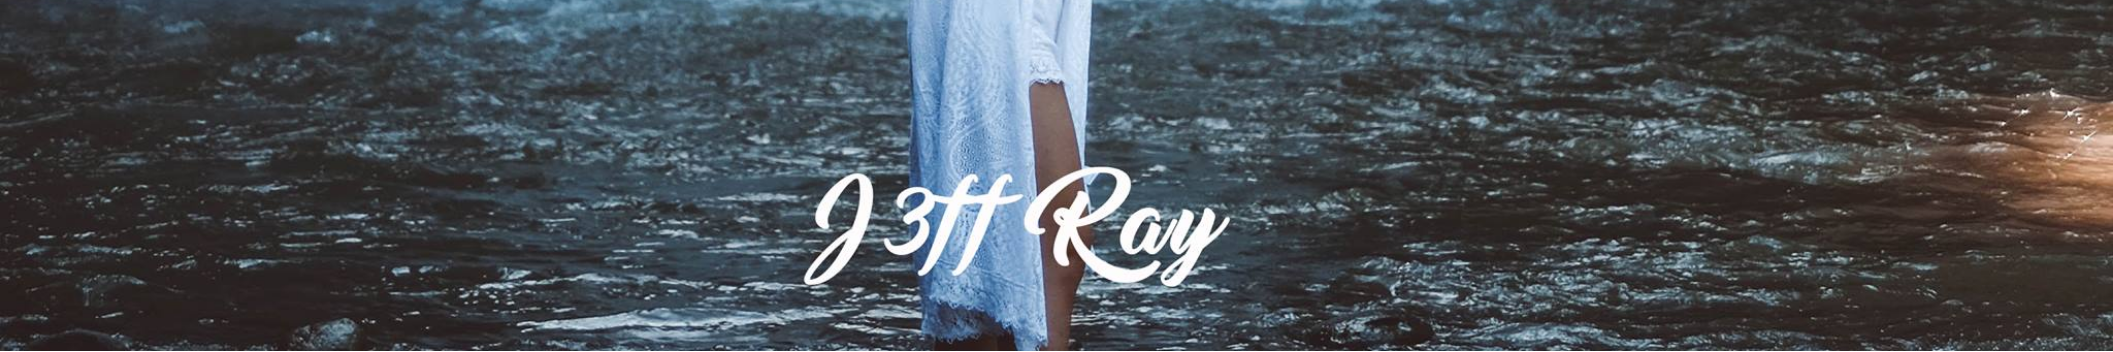 J3ff Ray (2)